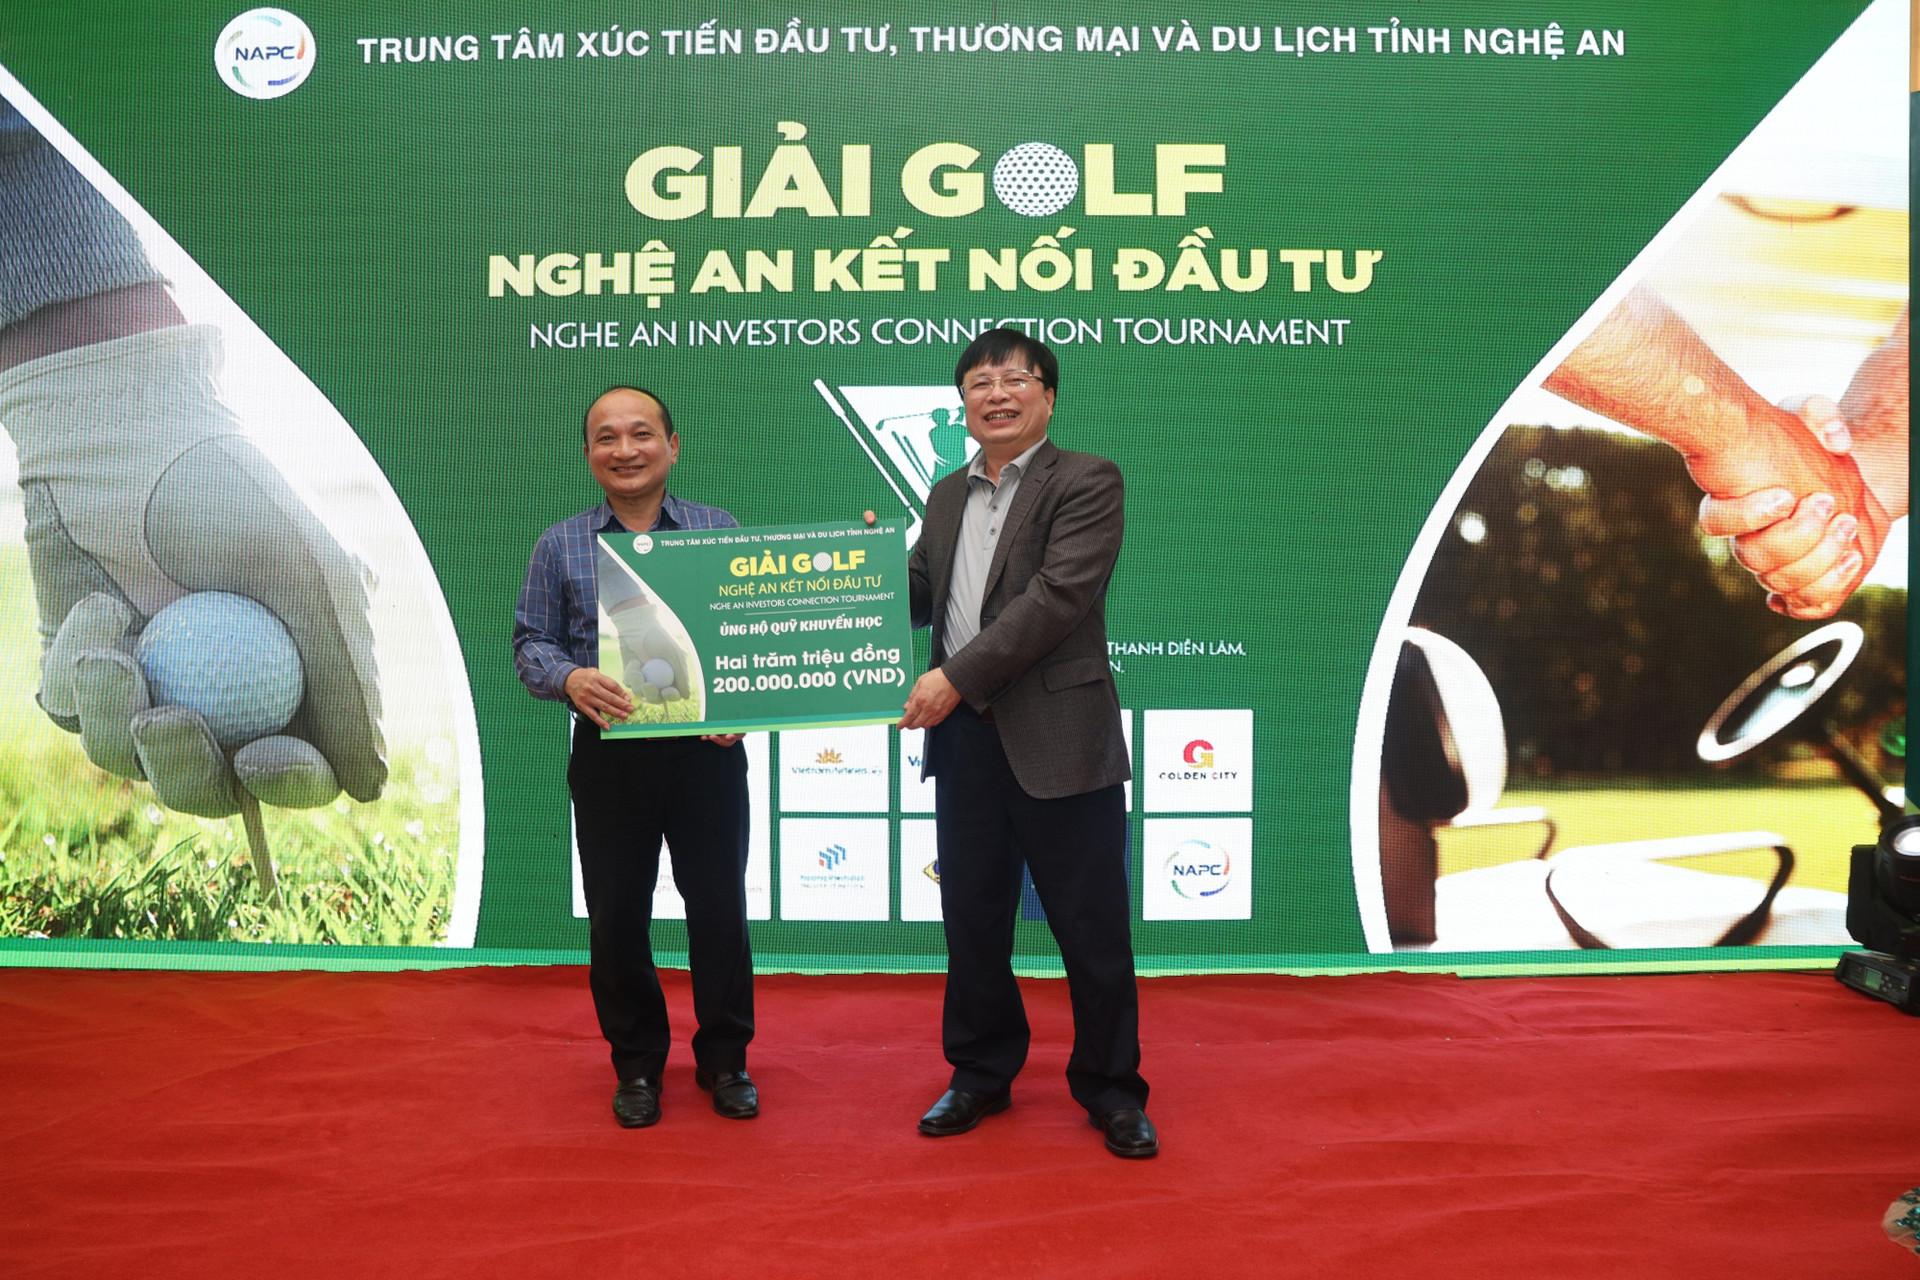 Golfer Nguyễn Trung Đức vô địch giải golf Nghệ An kết nối đầu tư 2021 - Ảnh 2.